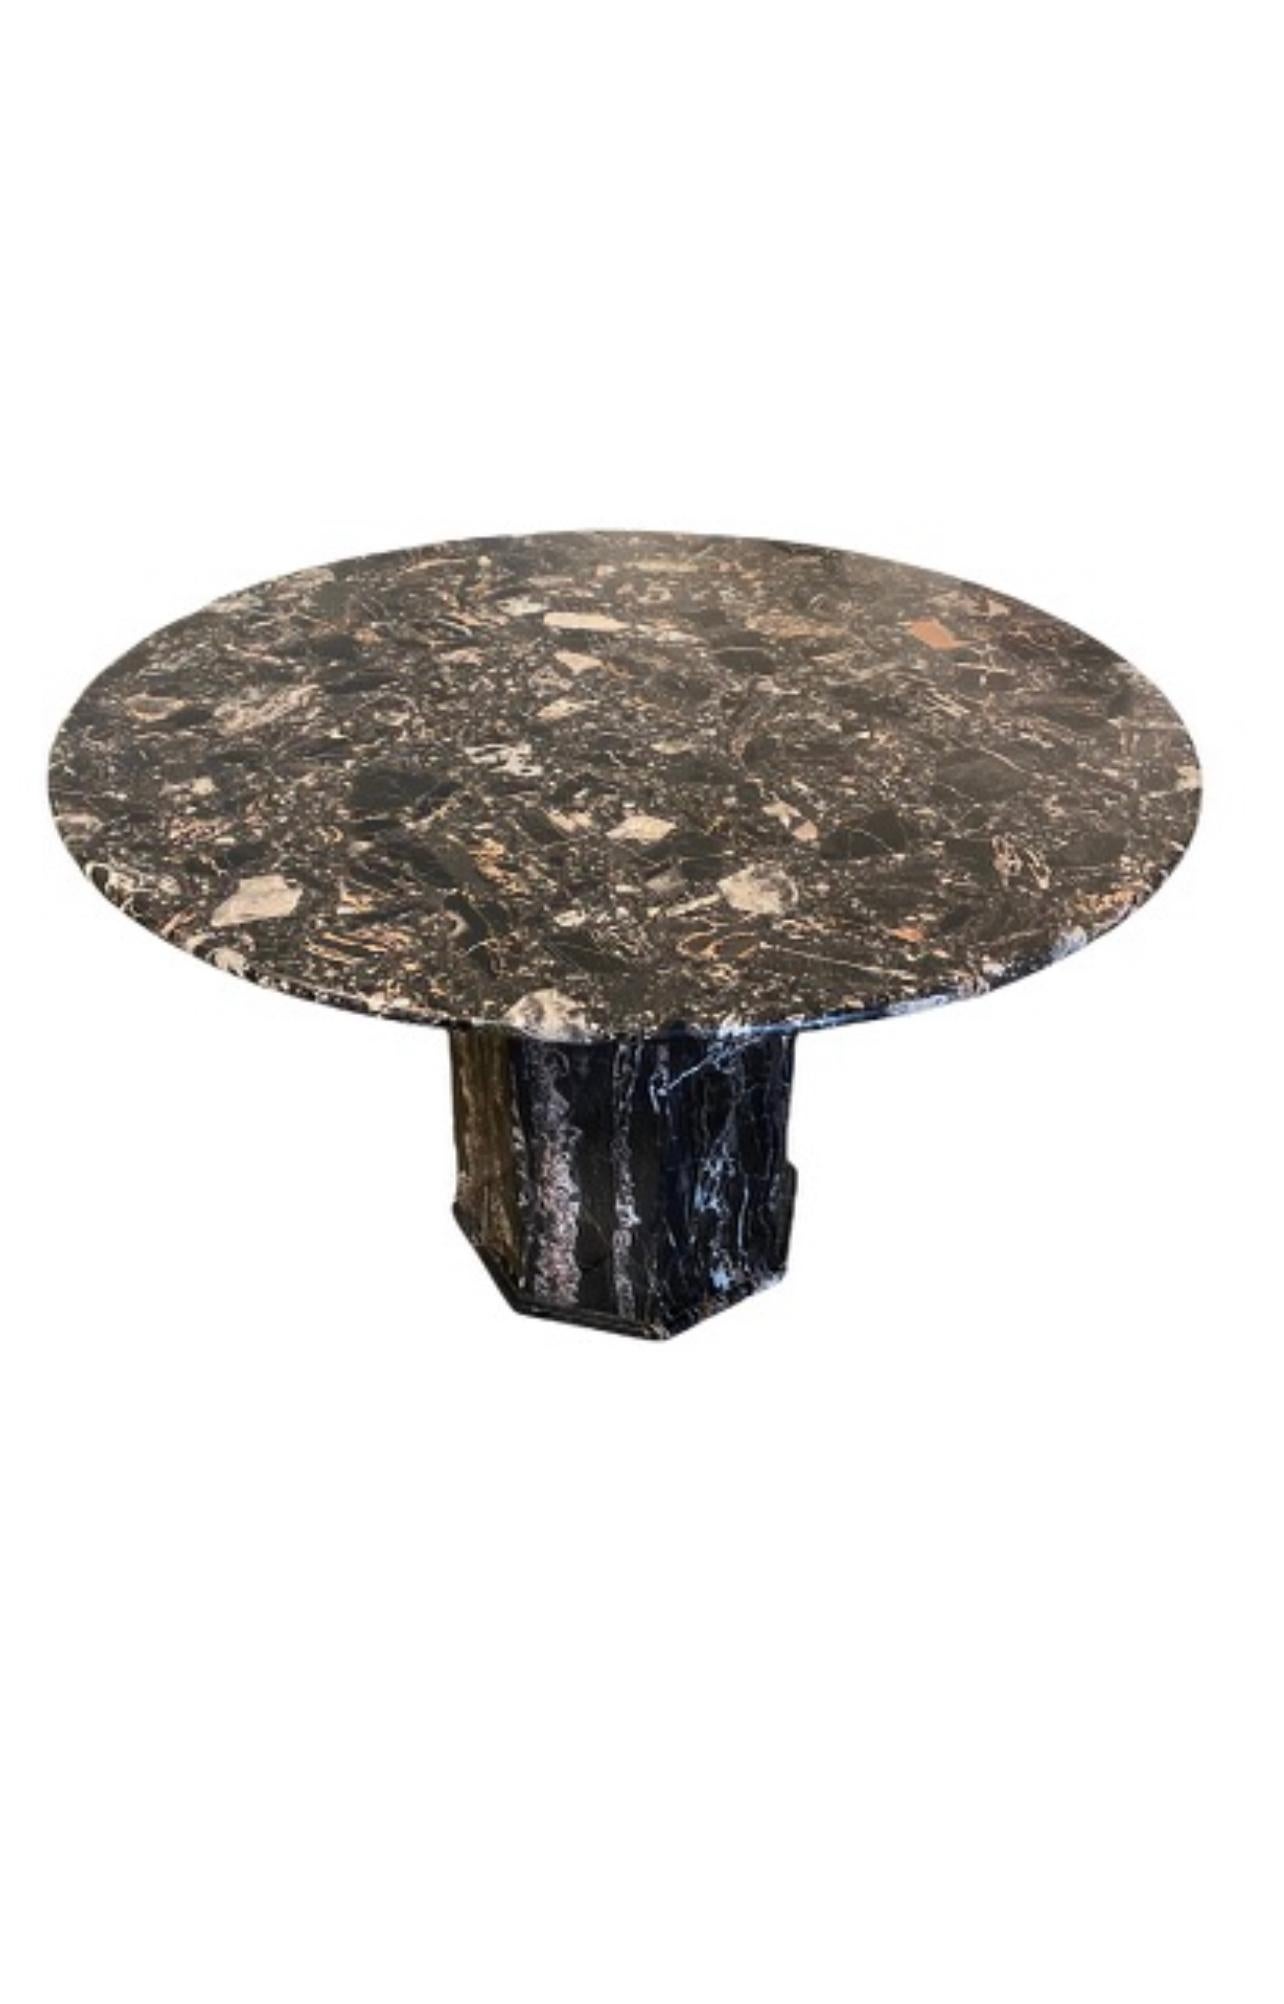 Ein Mitteltisch aus Portoro-Marmor 
Schwarz-Weiß-Schattierungen und ein Beige-Rosa. Schöne Bewegung und Färbung des Steins
Der Tisch hat einen modernen Deko-Charakter.
Der Deckel lässt sich zum leichteren Transport vom Sockel trennen.